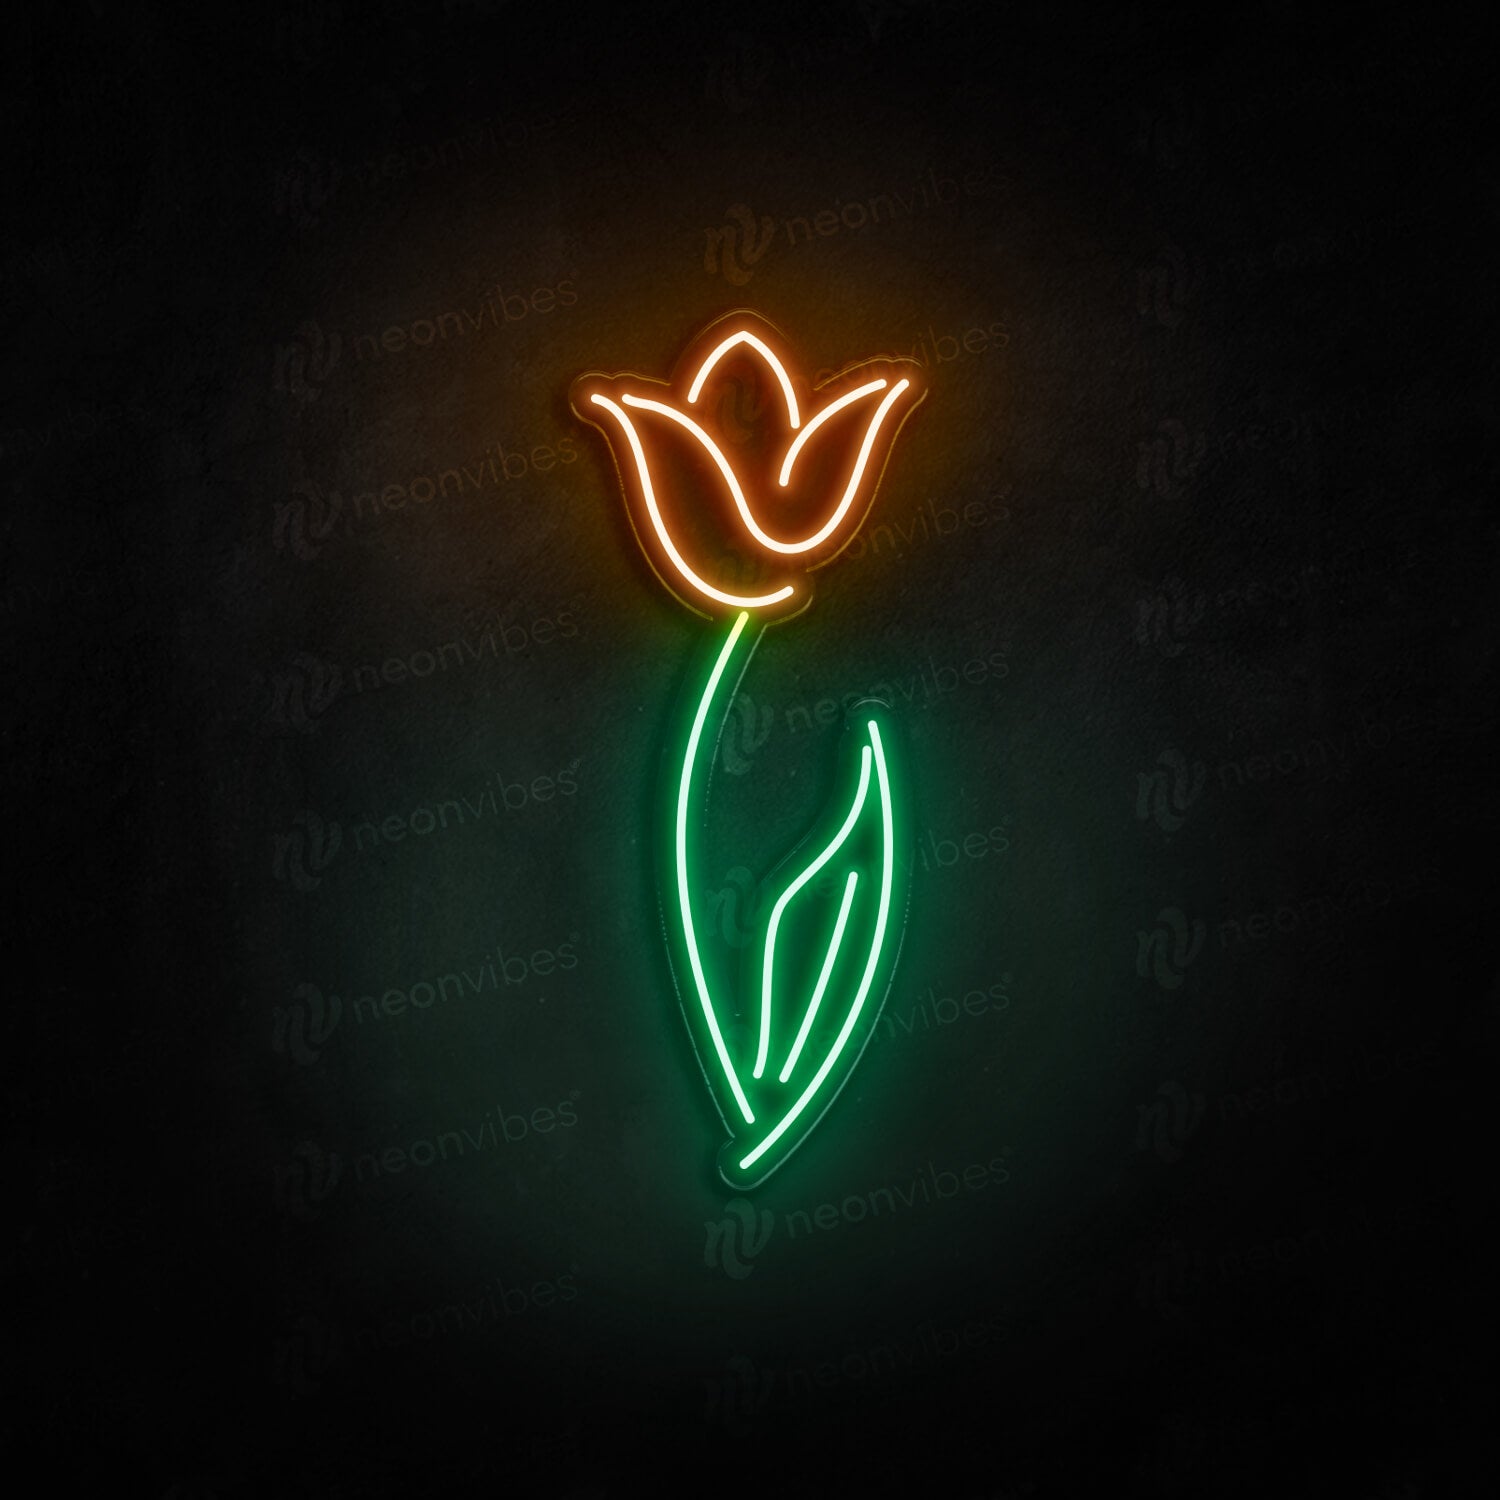 Tulip neon sign